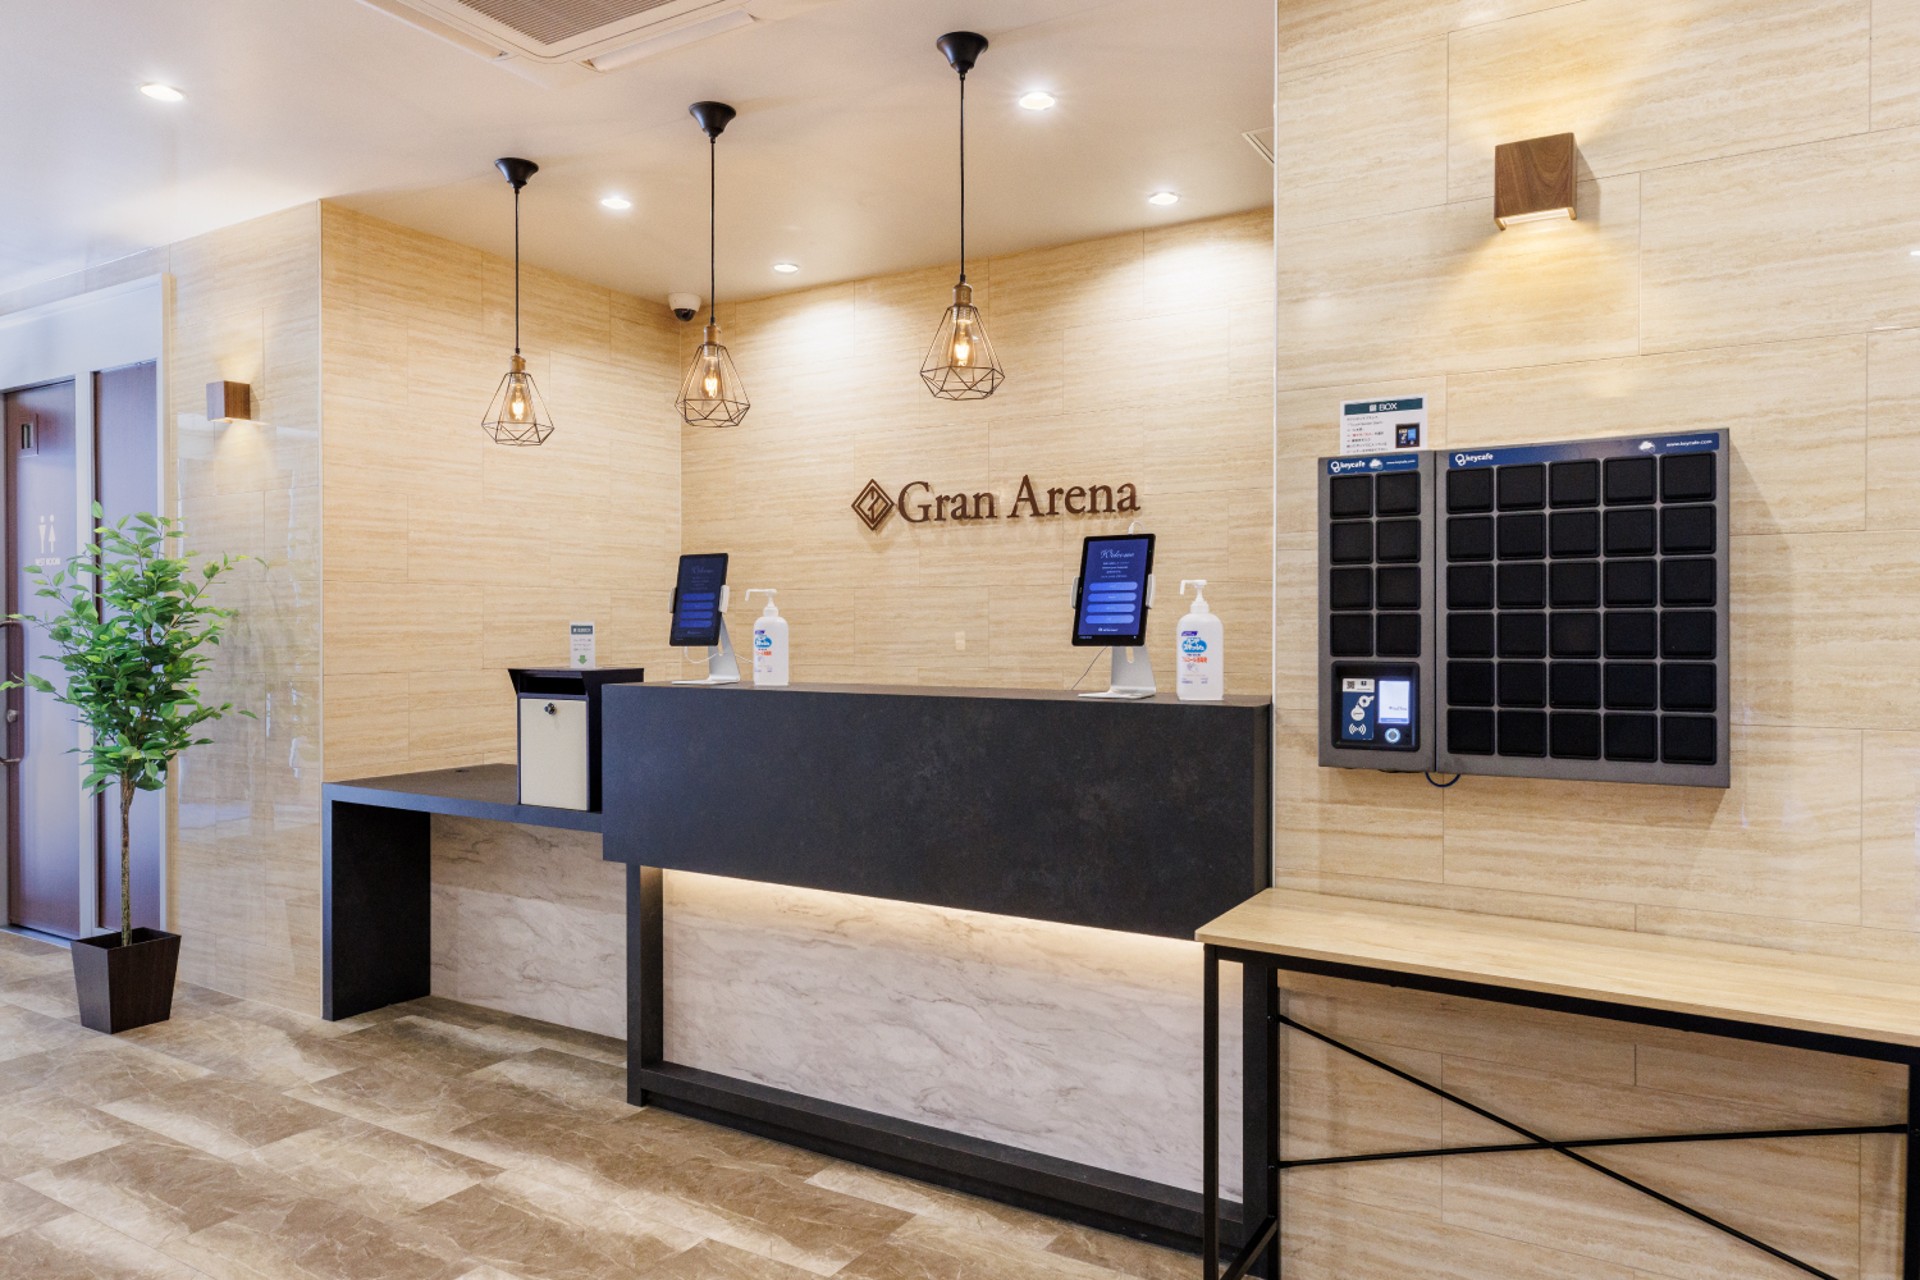 L'hôtel Gran Arena réduit les coûts et augmente la satisfaction des clients avec Keycafe